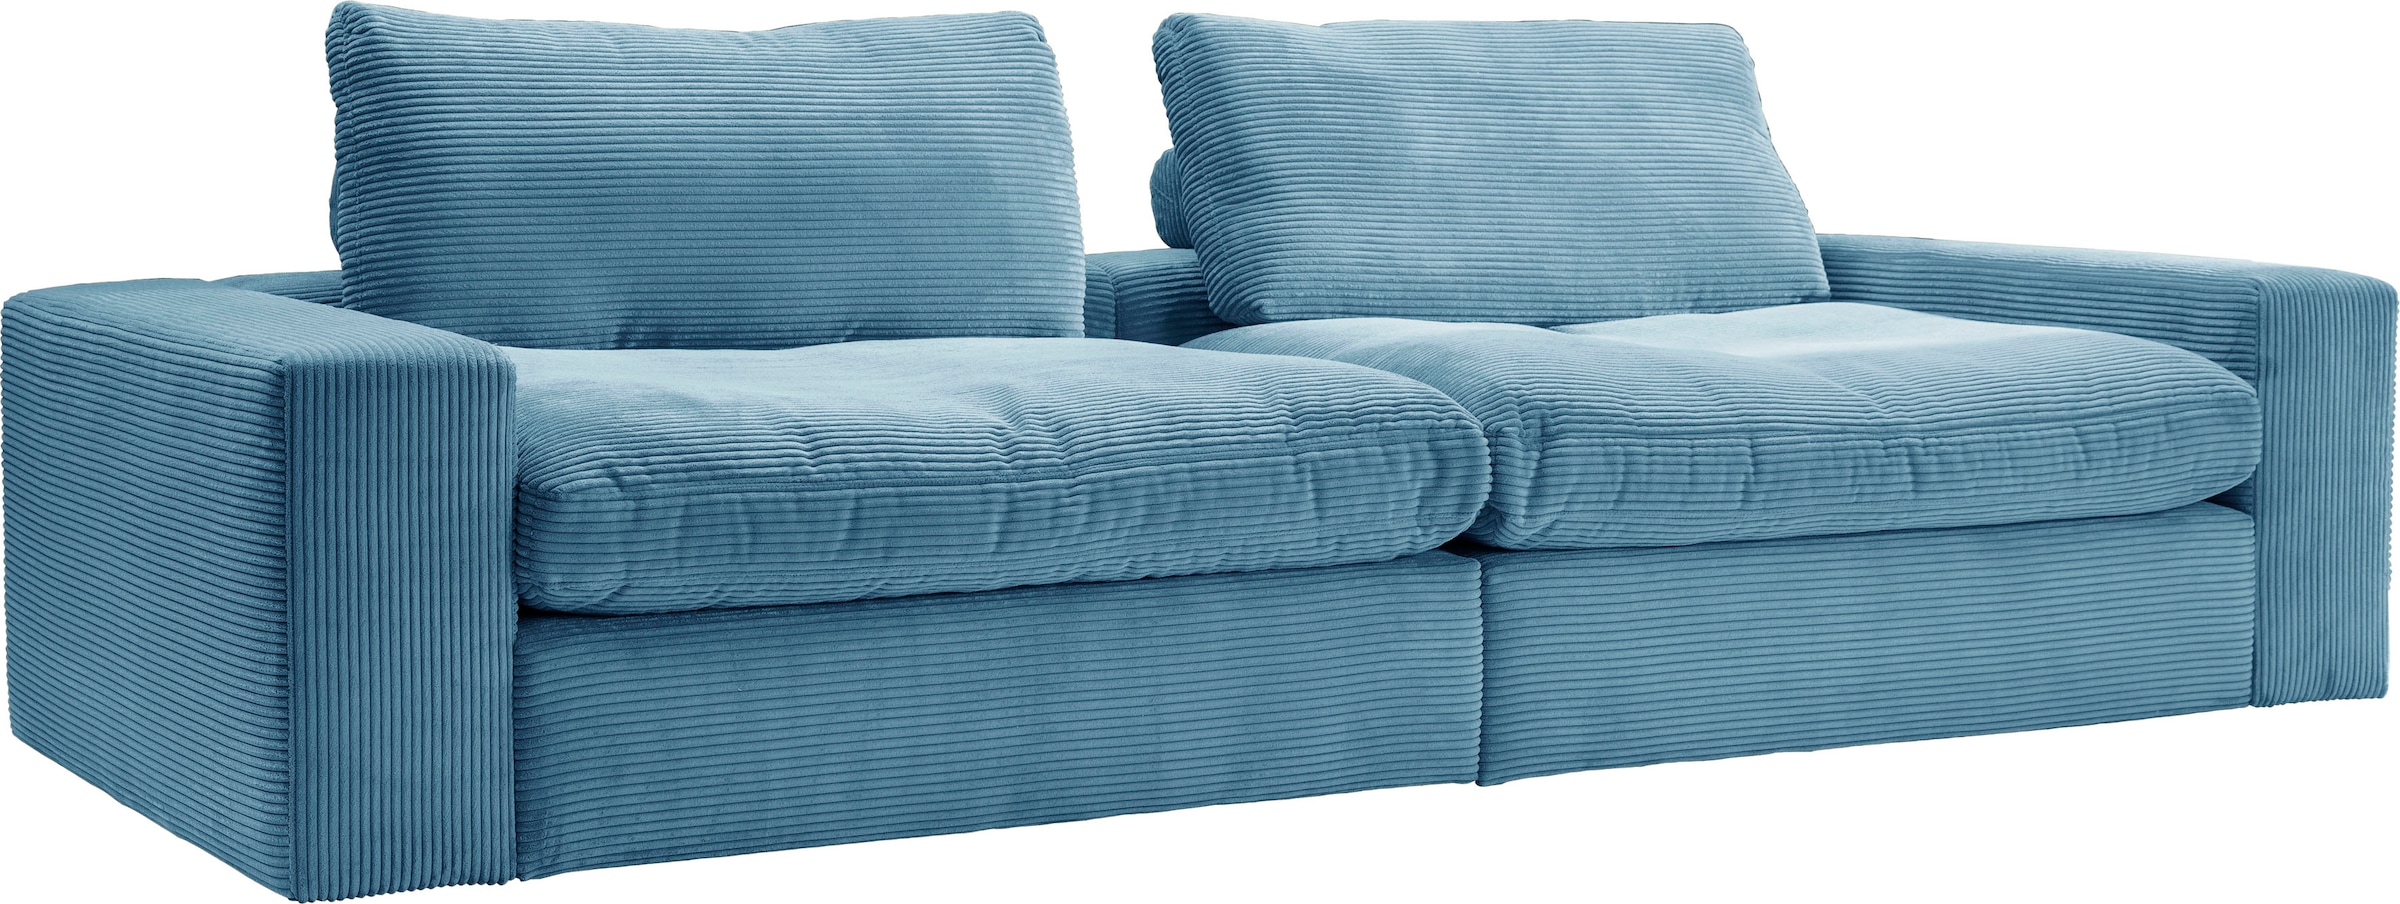 alina Big-Sofa »Sandy«, 256 cm breit und 123 cm tief, in modernem Cordstoff  bequem kaufen